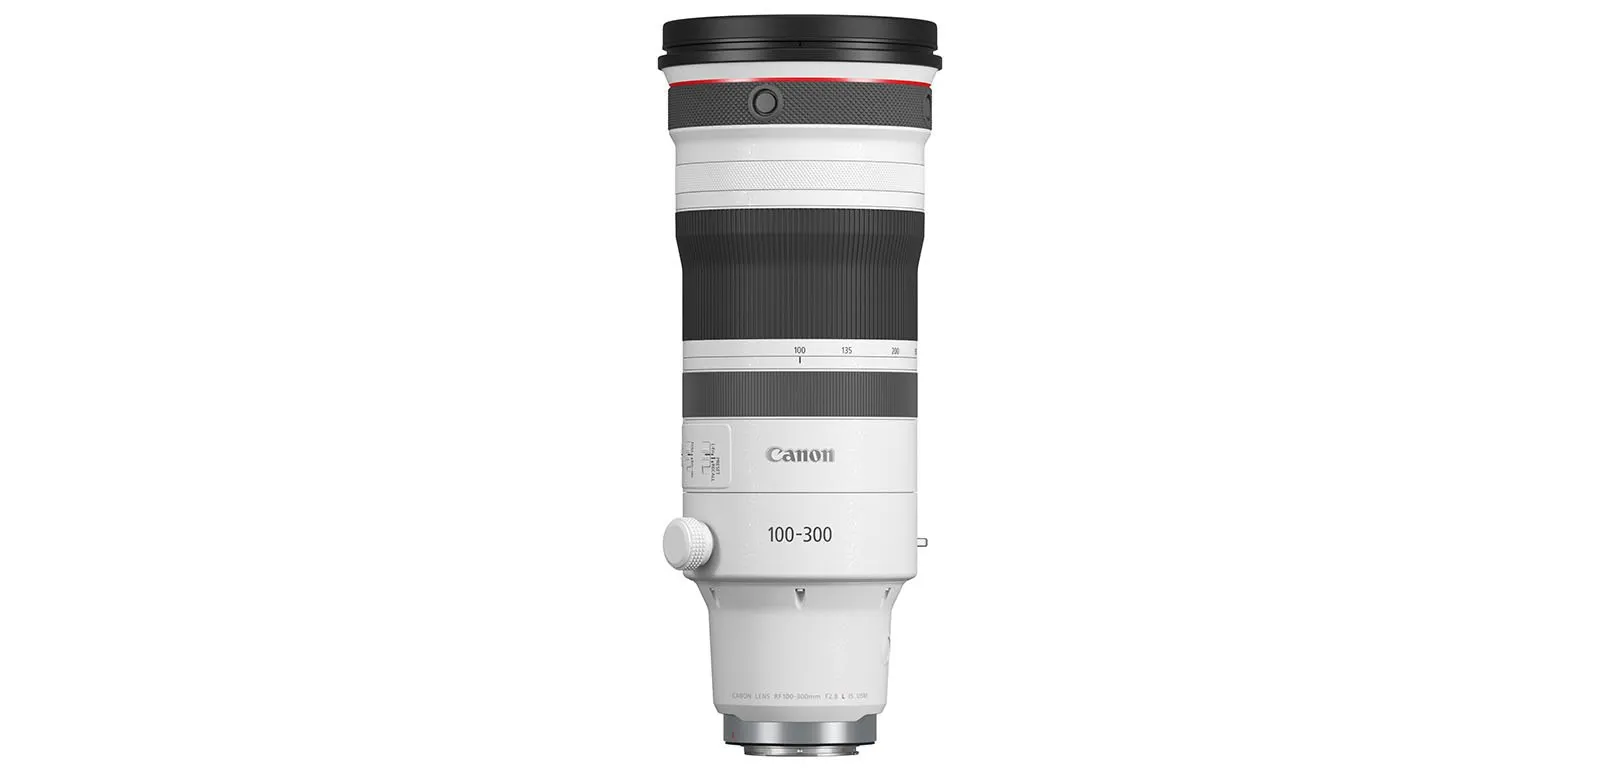 Canon ra mắt ống kính RF 100-300mm F2.8L IS USM với công nghệ và chất lượng quang học vượt trội.